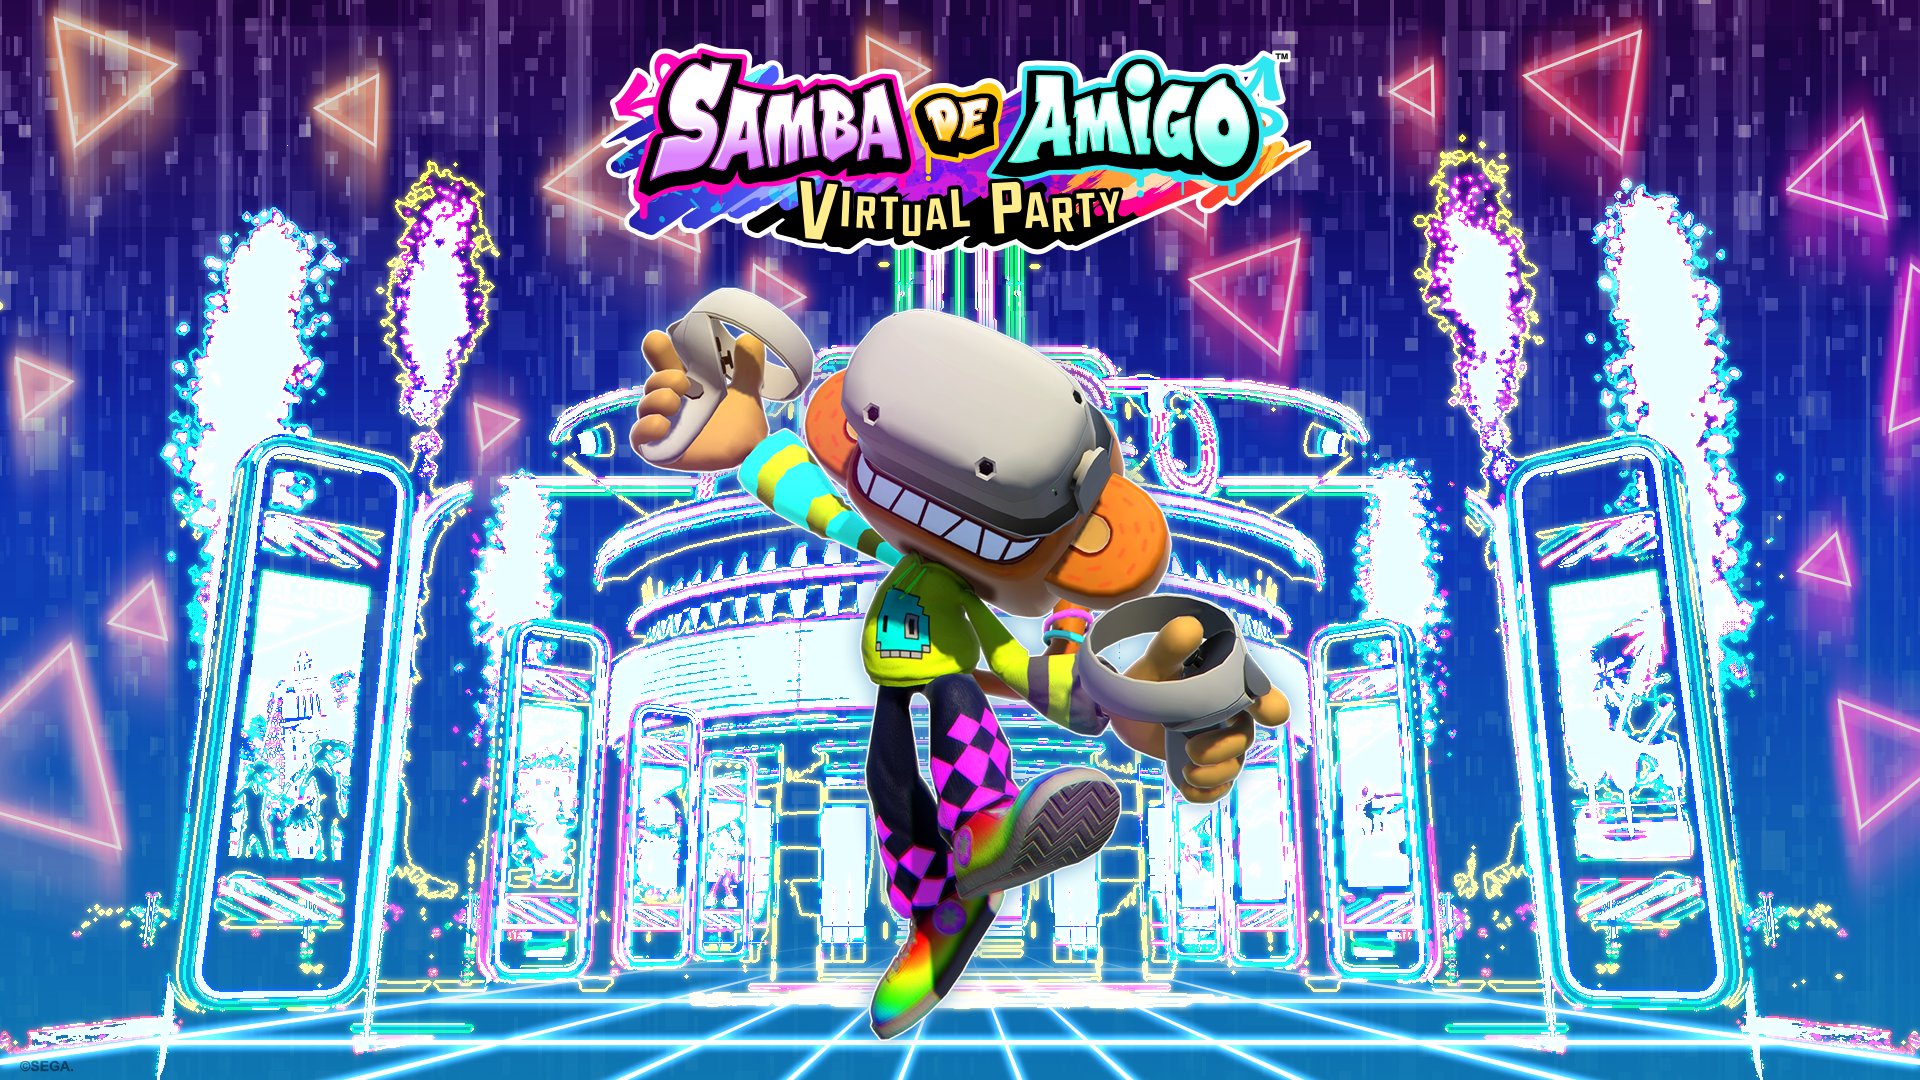 Permainan VR yang akan datang - Samba de Amigo: Pesta Maya